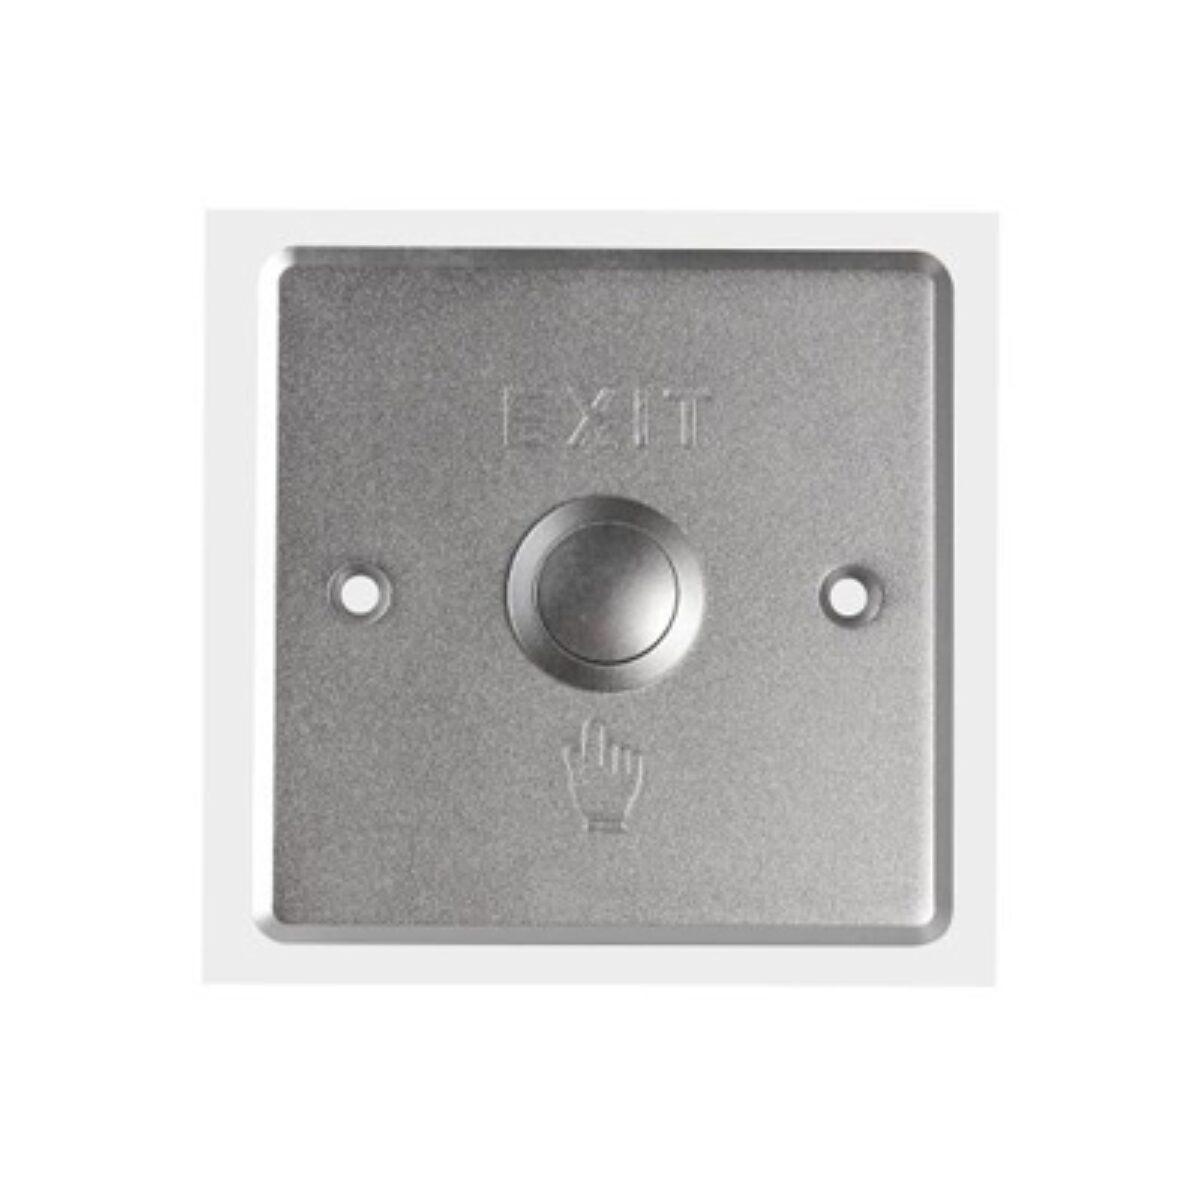 Hikvision Exit & Emergency Button – DS-K7P01